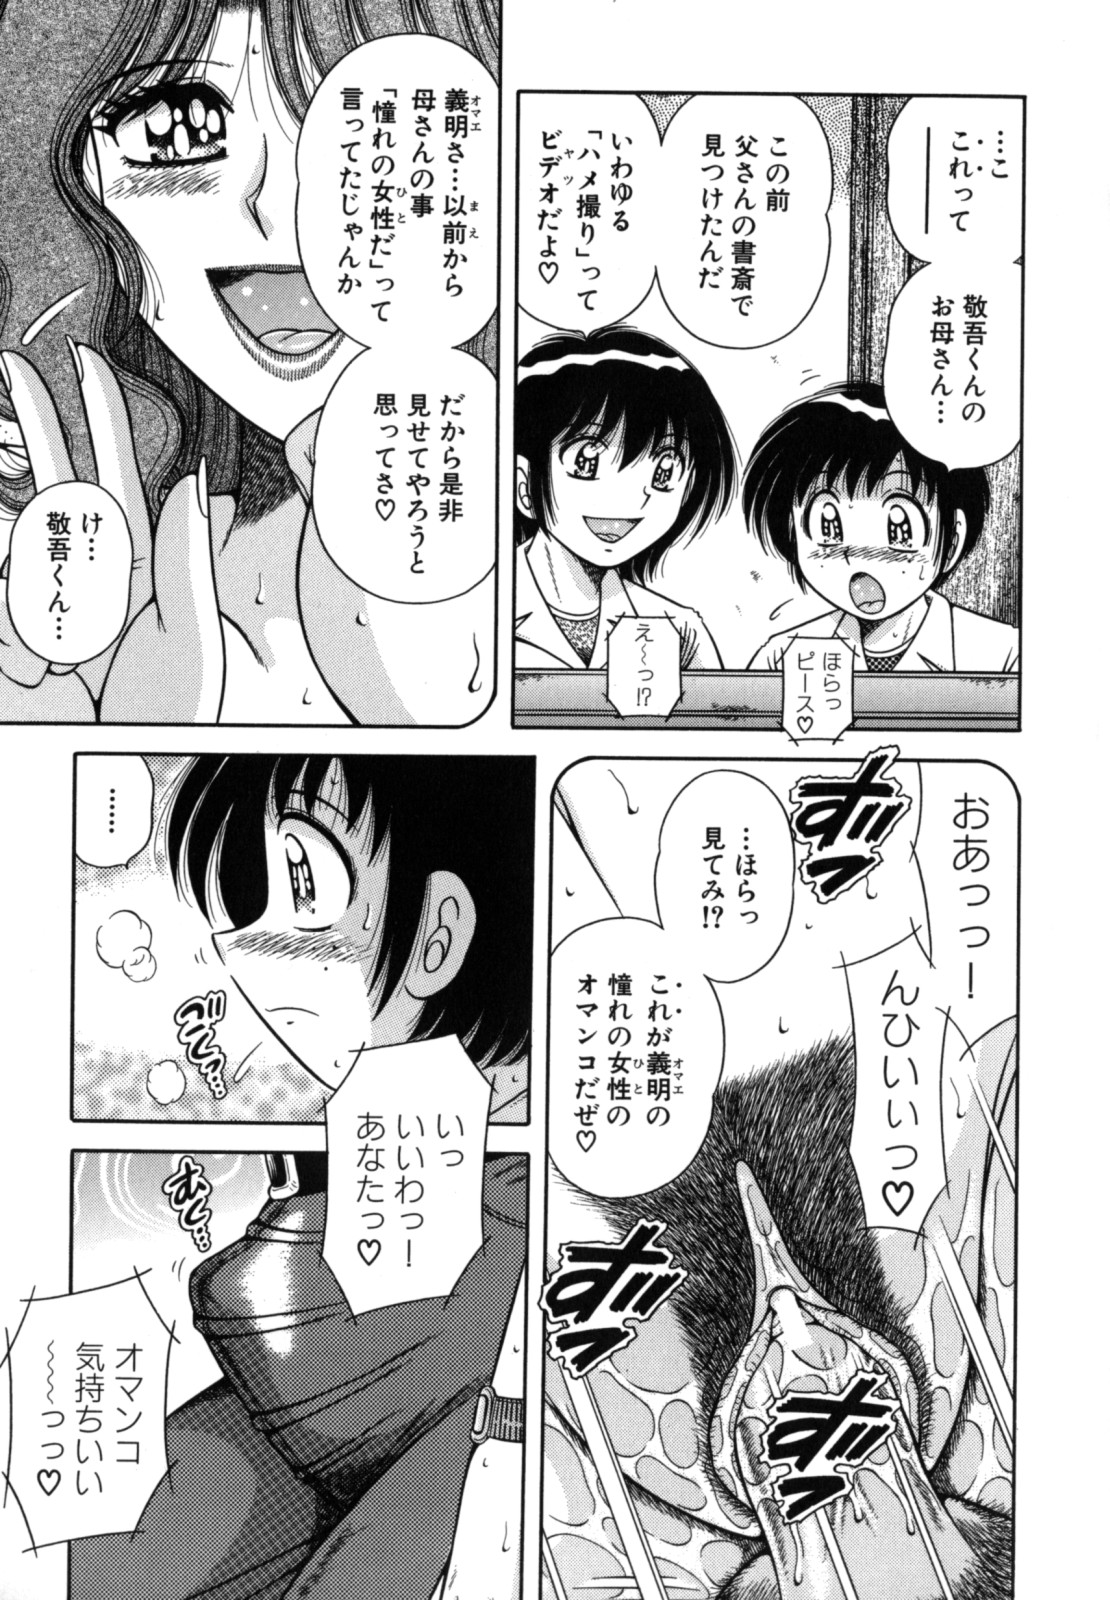 [Umino Sachi] R-18 page 9 full